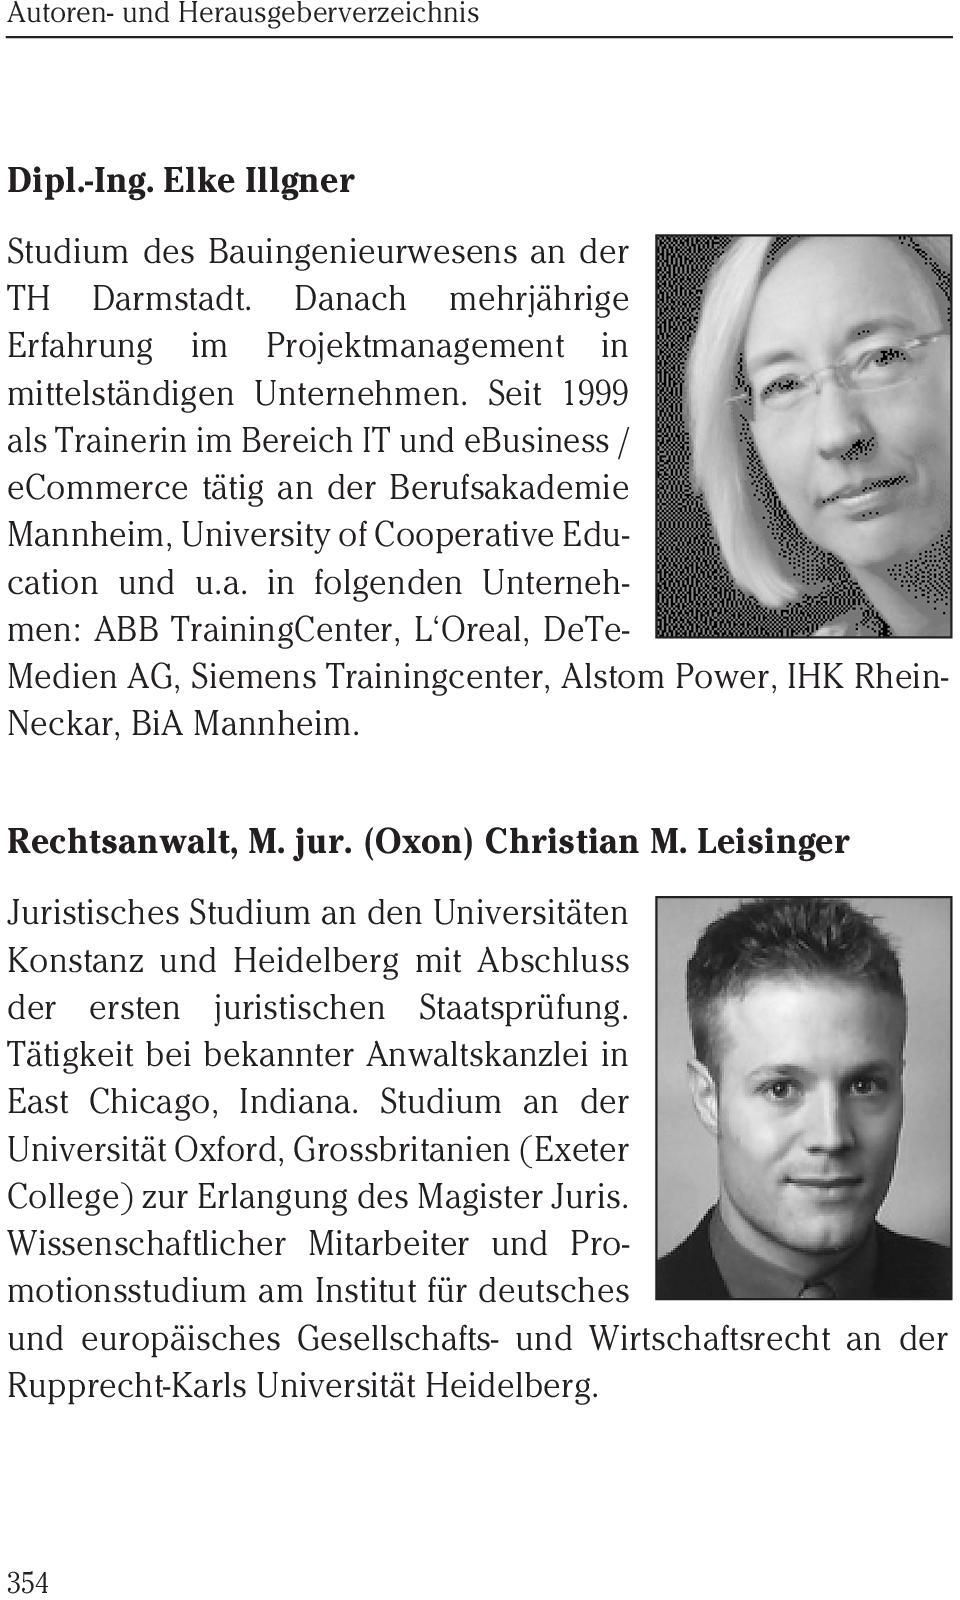 Rechtsanwalt, M. jur. (Oxon) Christian M. Leisinger Juristisches Studium an den Universitäten Konstanz und Heidelberg mit Abschluss der ersten juristischen Staatsprüfung.